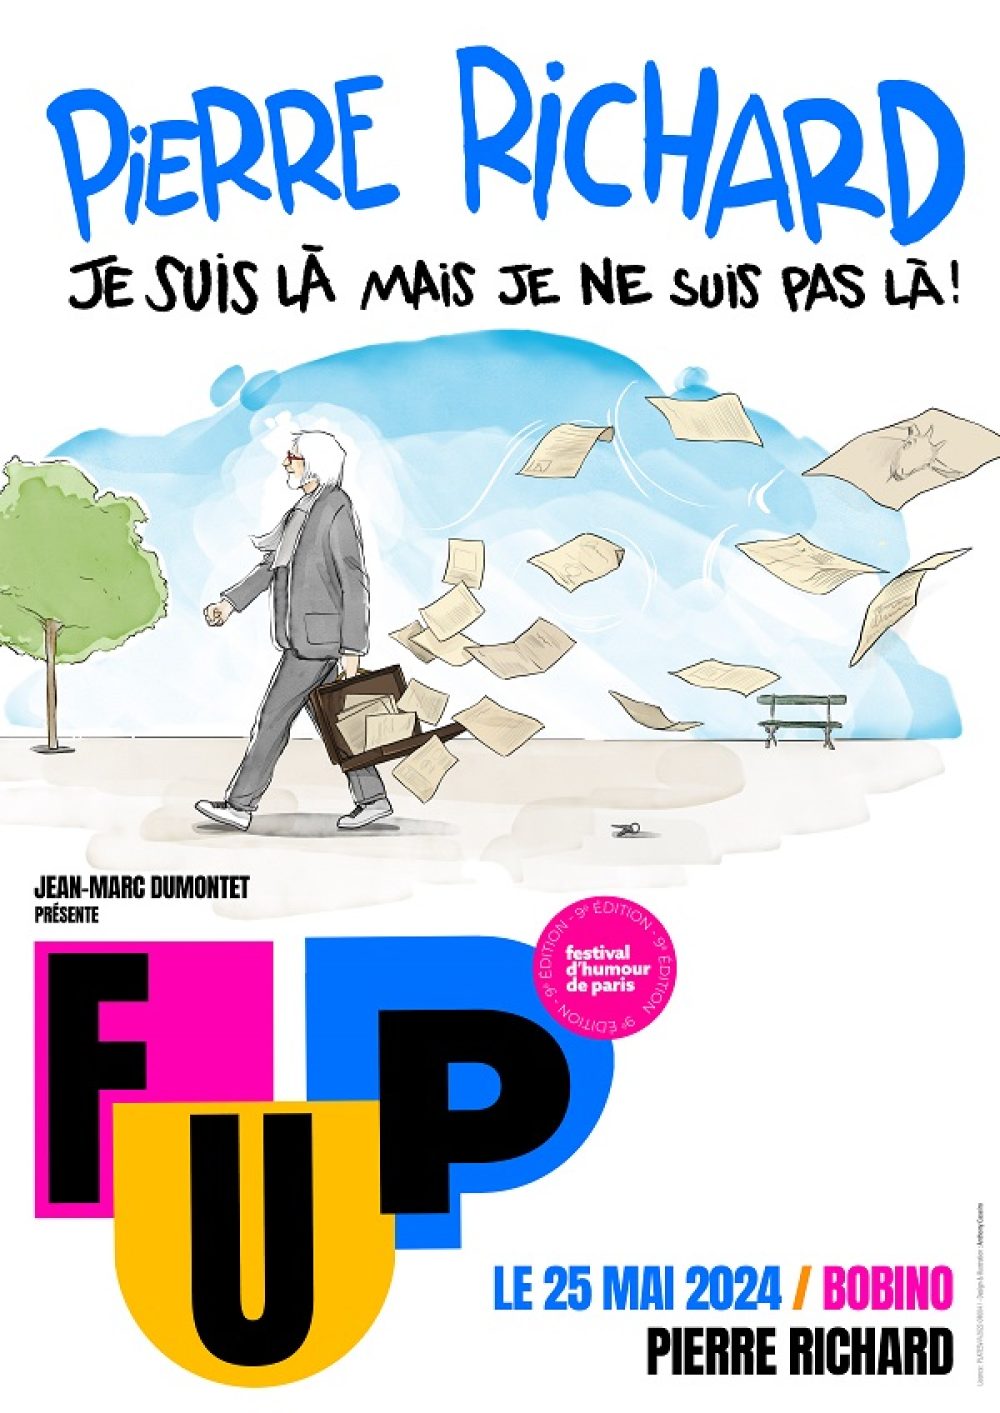 Soirée Pierre Richard - Je suis là mais je ne suis pas là - Festival d'Humour de Paris FUP